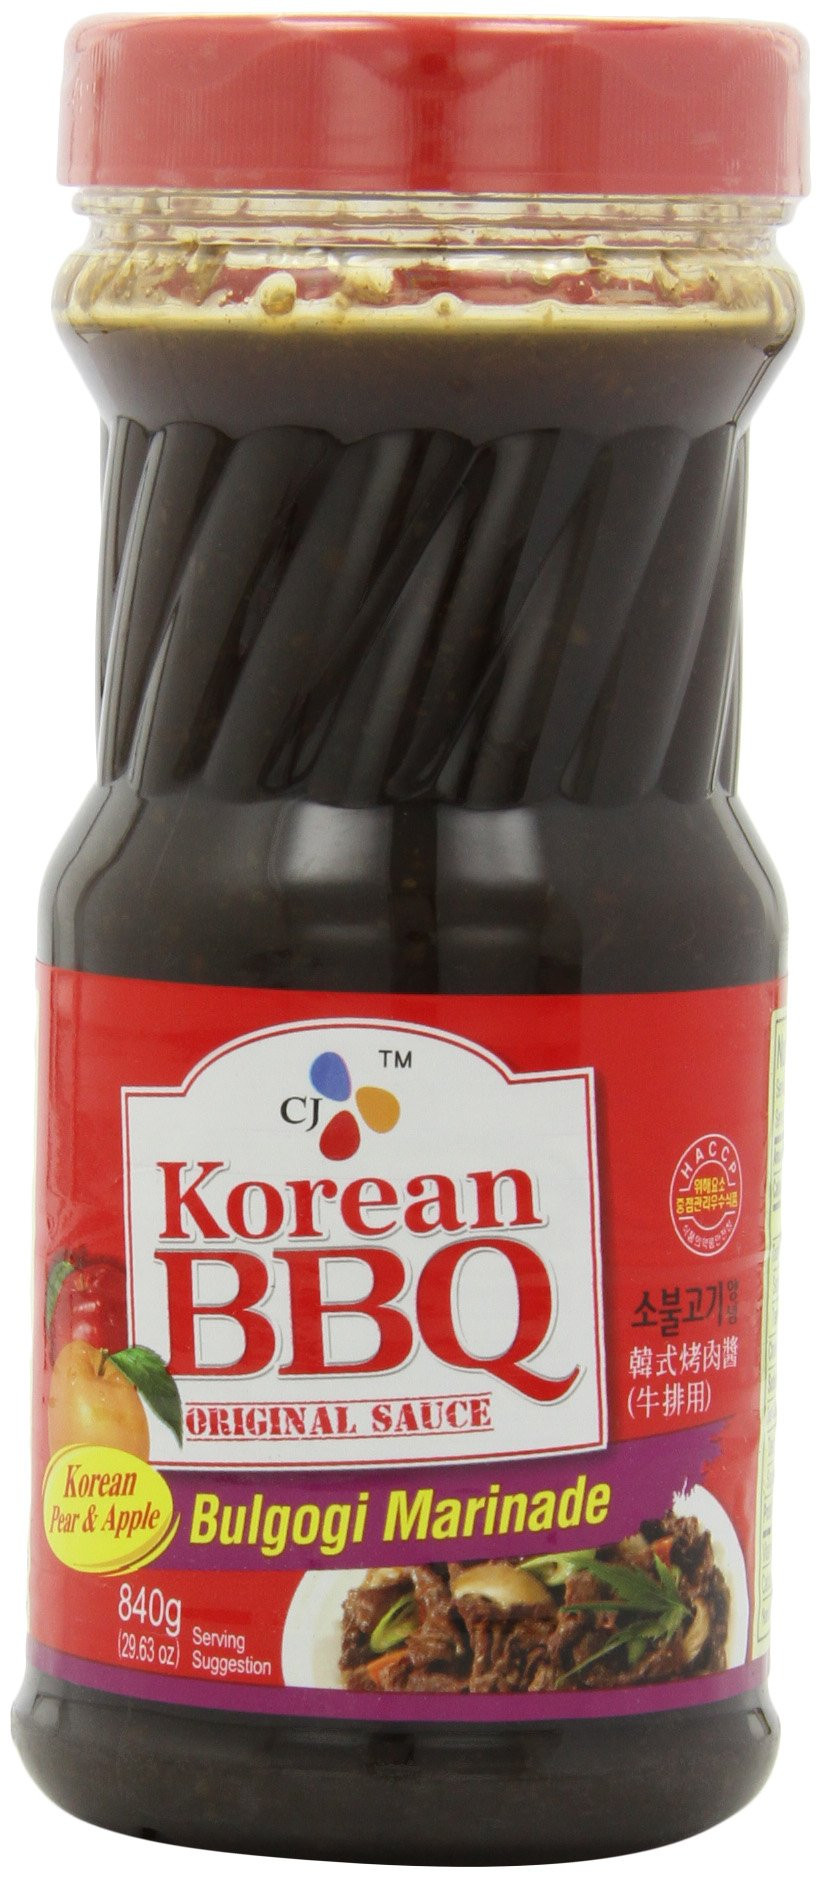 Bbq Sauce Marinade
 Korean BBQ Original Sauce Bulgogi Marinade Made in Korea